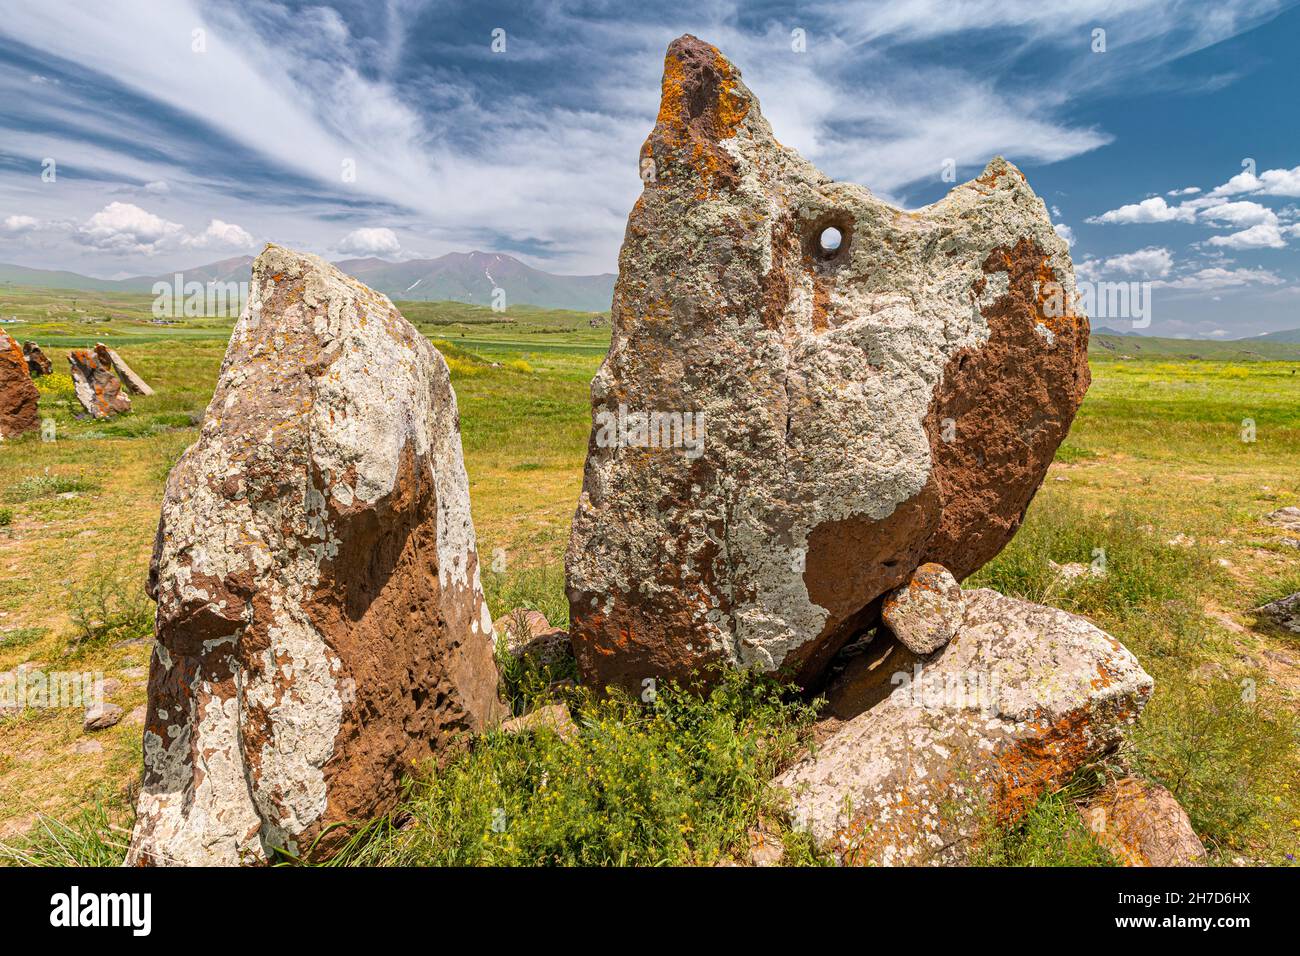 Carahunge ou Stonehenge arménien - un ancien complexe mégalithique qui a servi d'observatoire astronomique et un lieu ésotérique et magique Banque D'Images